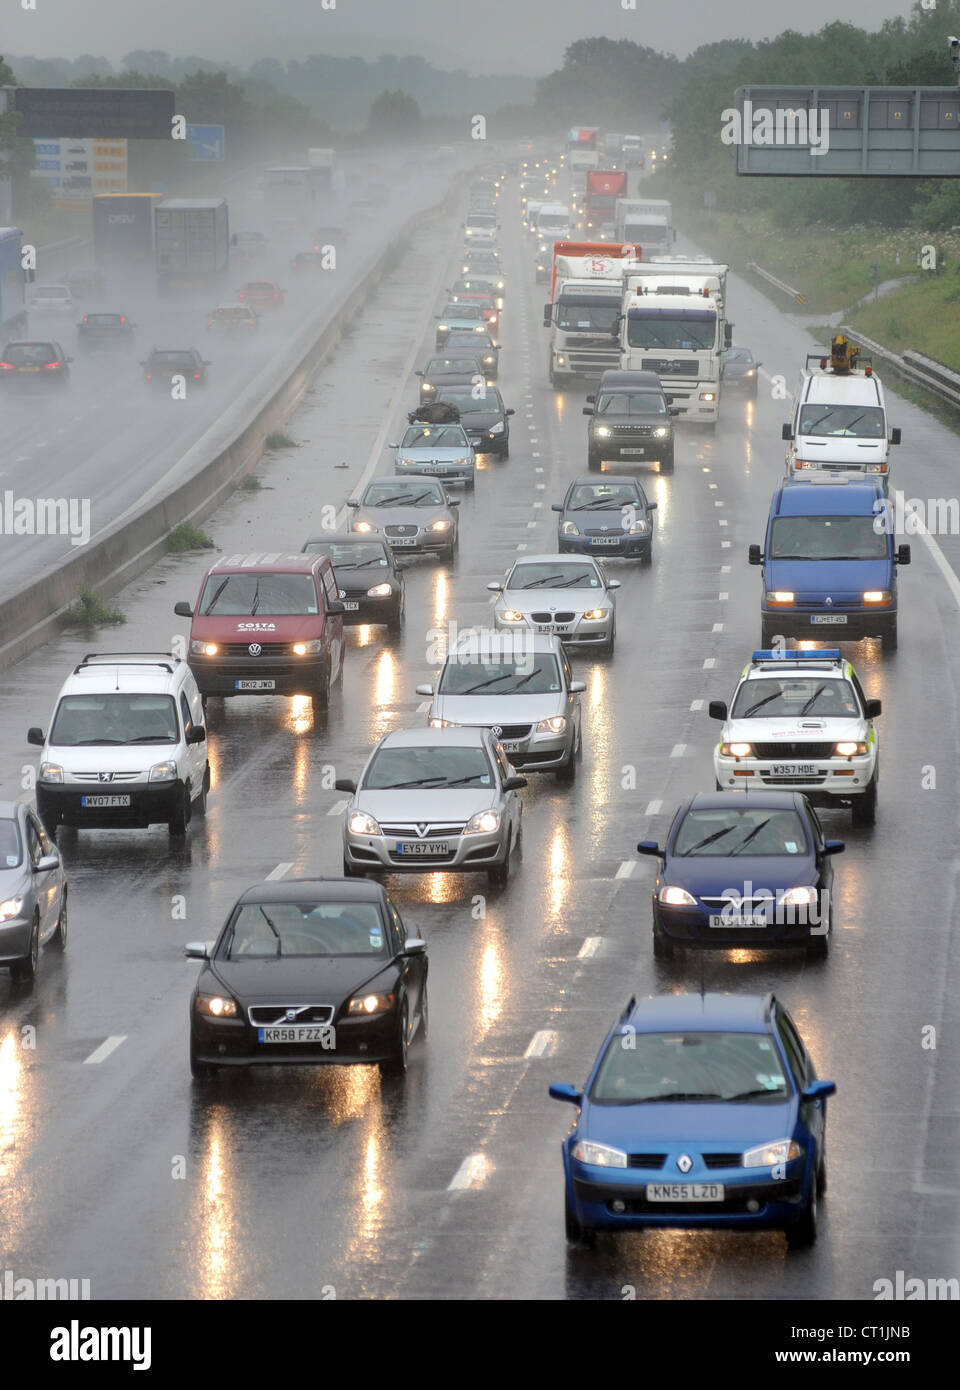 Il traffico pesante IN WET tempo piovoso condizioni sull'autostrada M6 nei pressi di Stafford England re le condizioni di guida la visibilità di pioggia REGNO UNITO Foto Stock